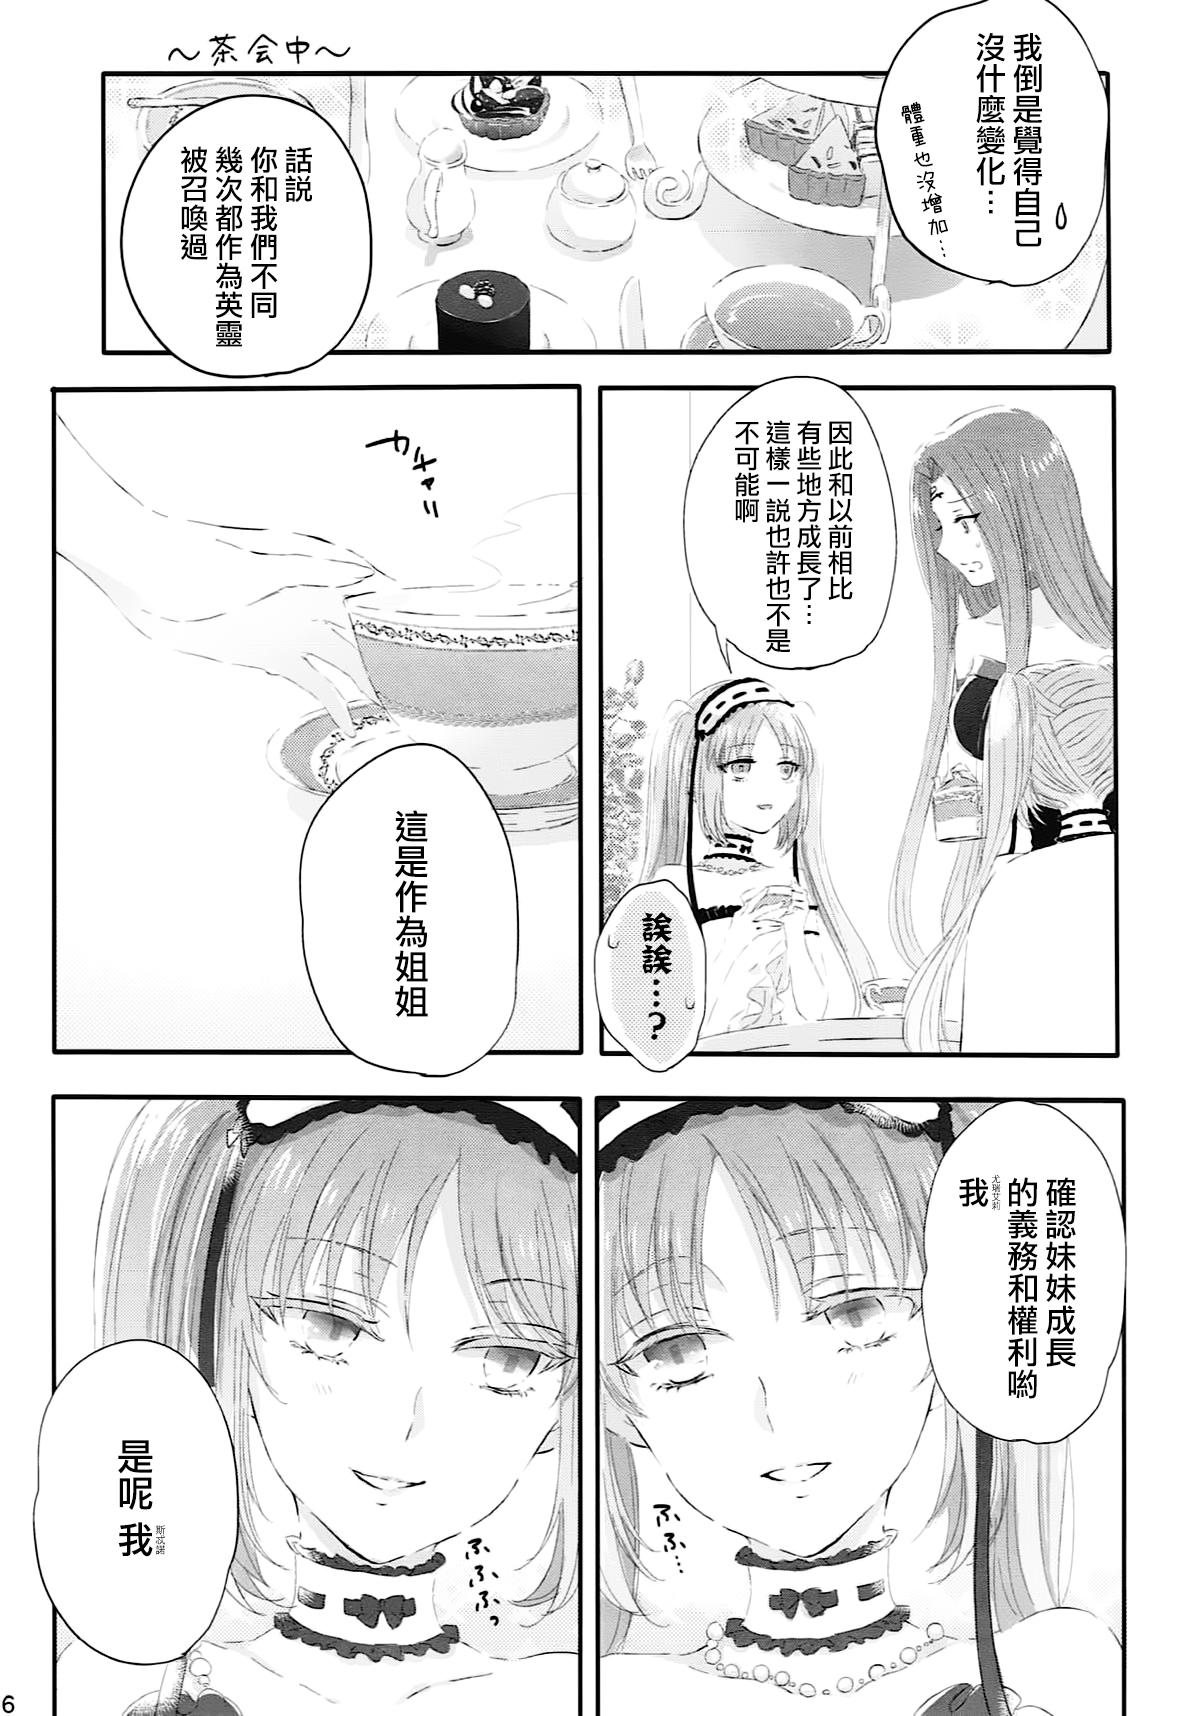 Ball Licking Imouto wa Ane no Mono - Fate grand order Casada - Page 6